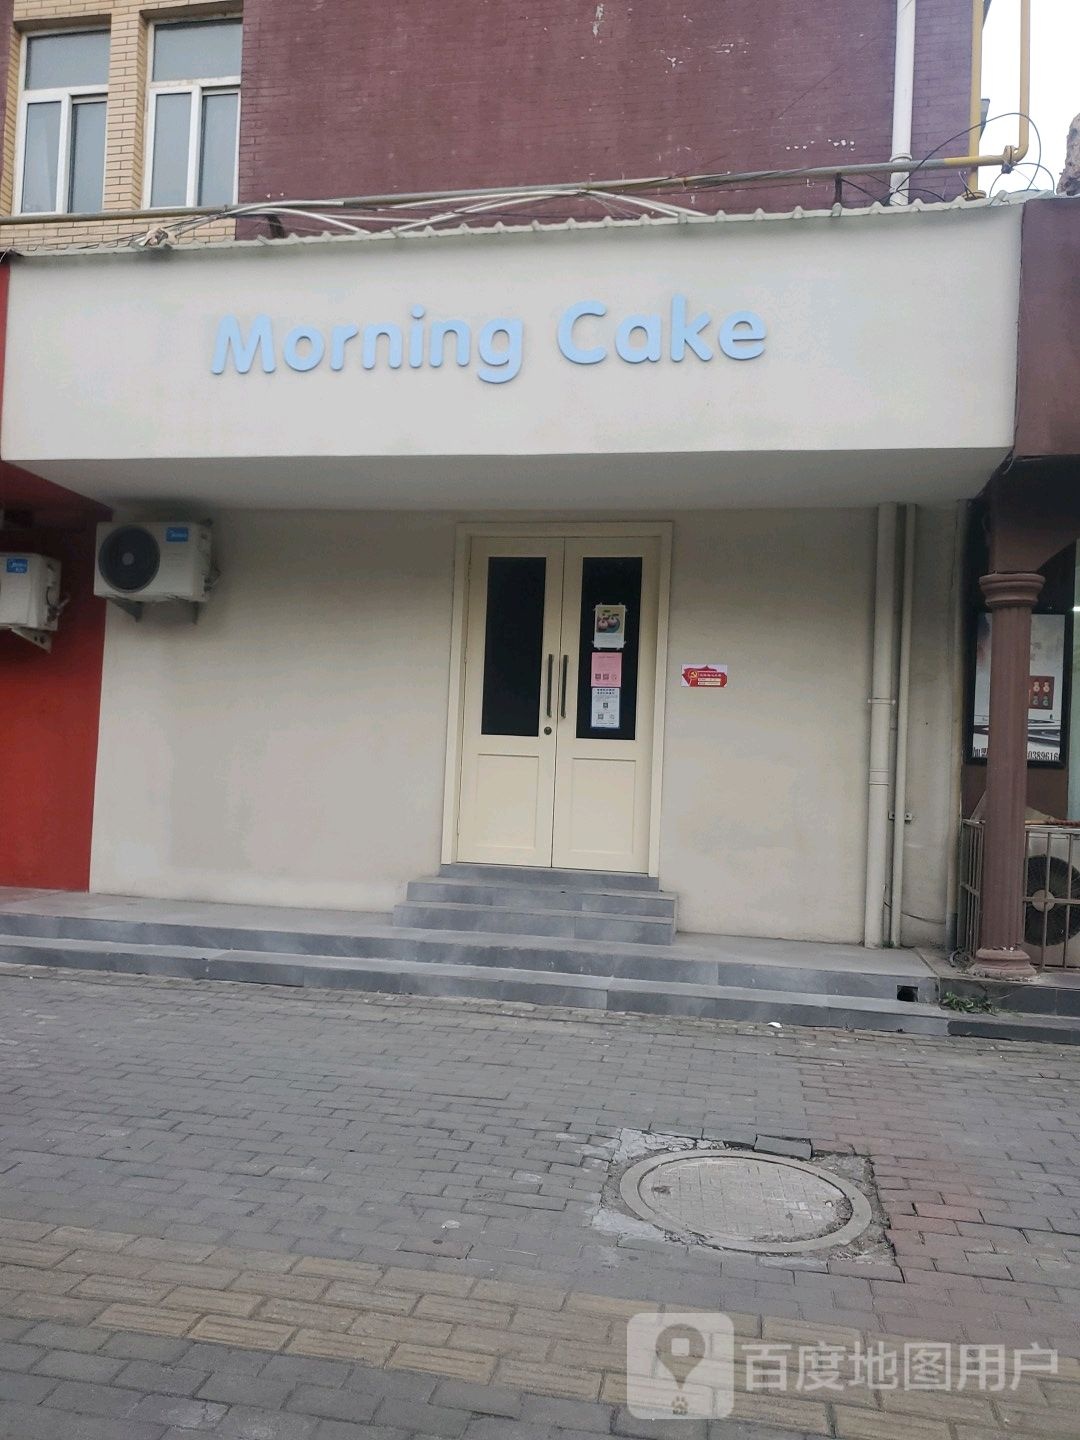 Morning Cake